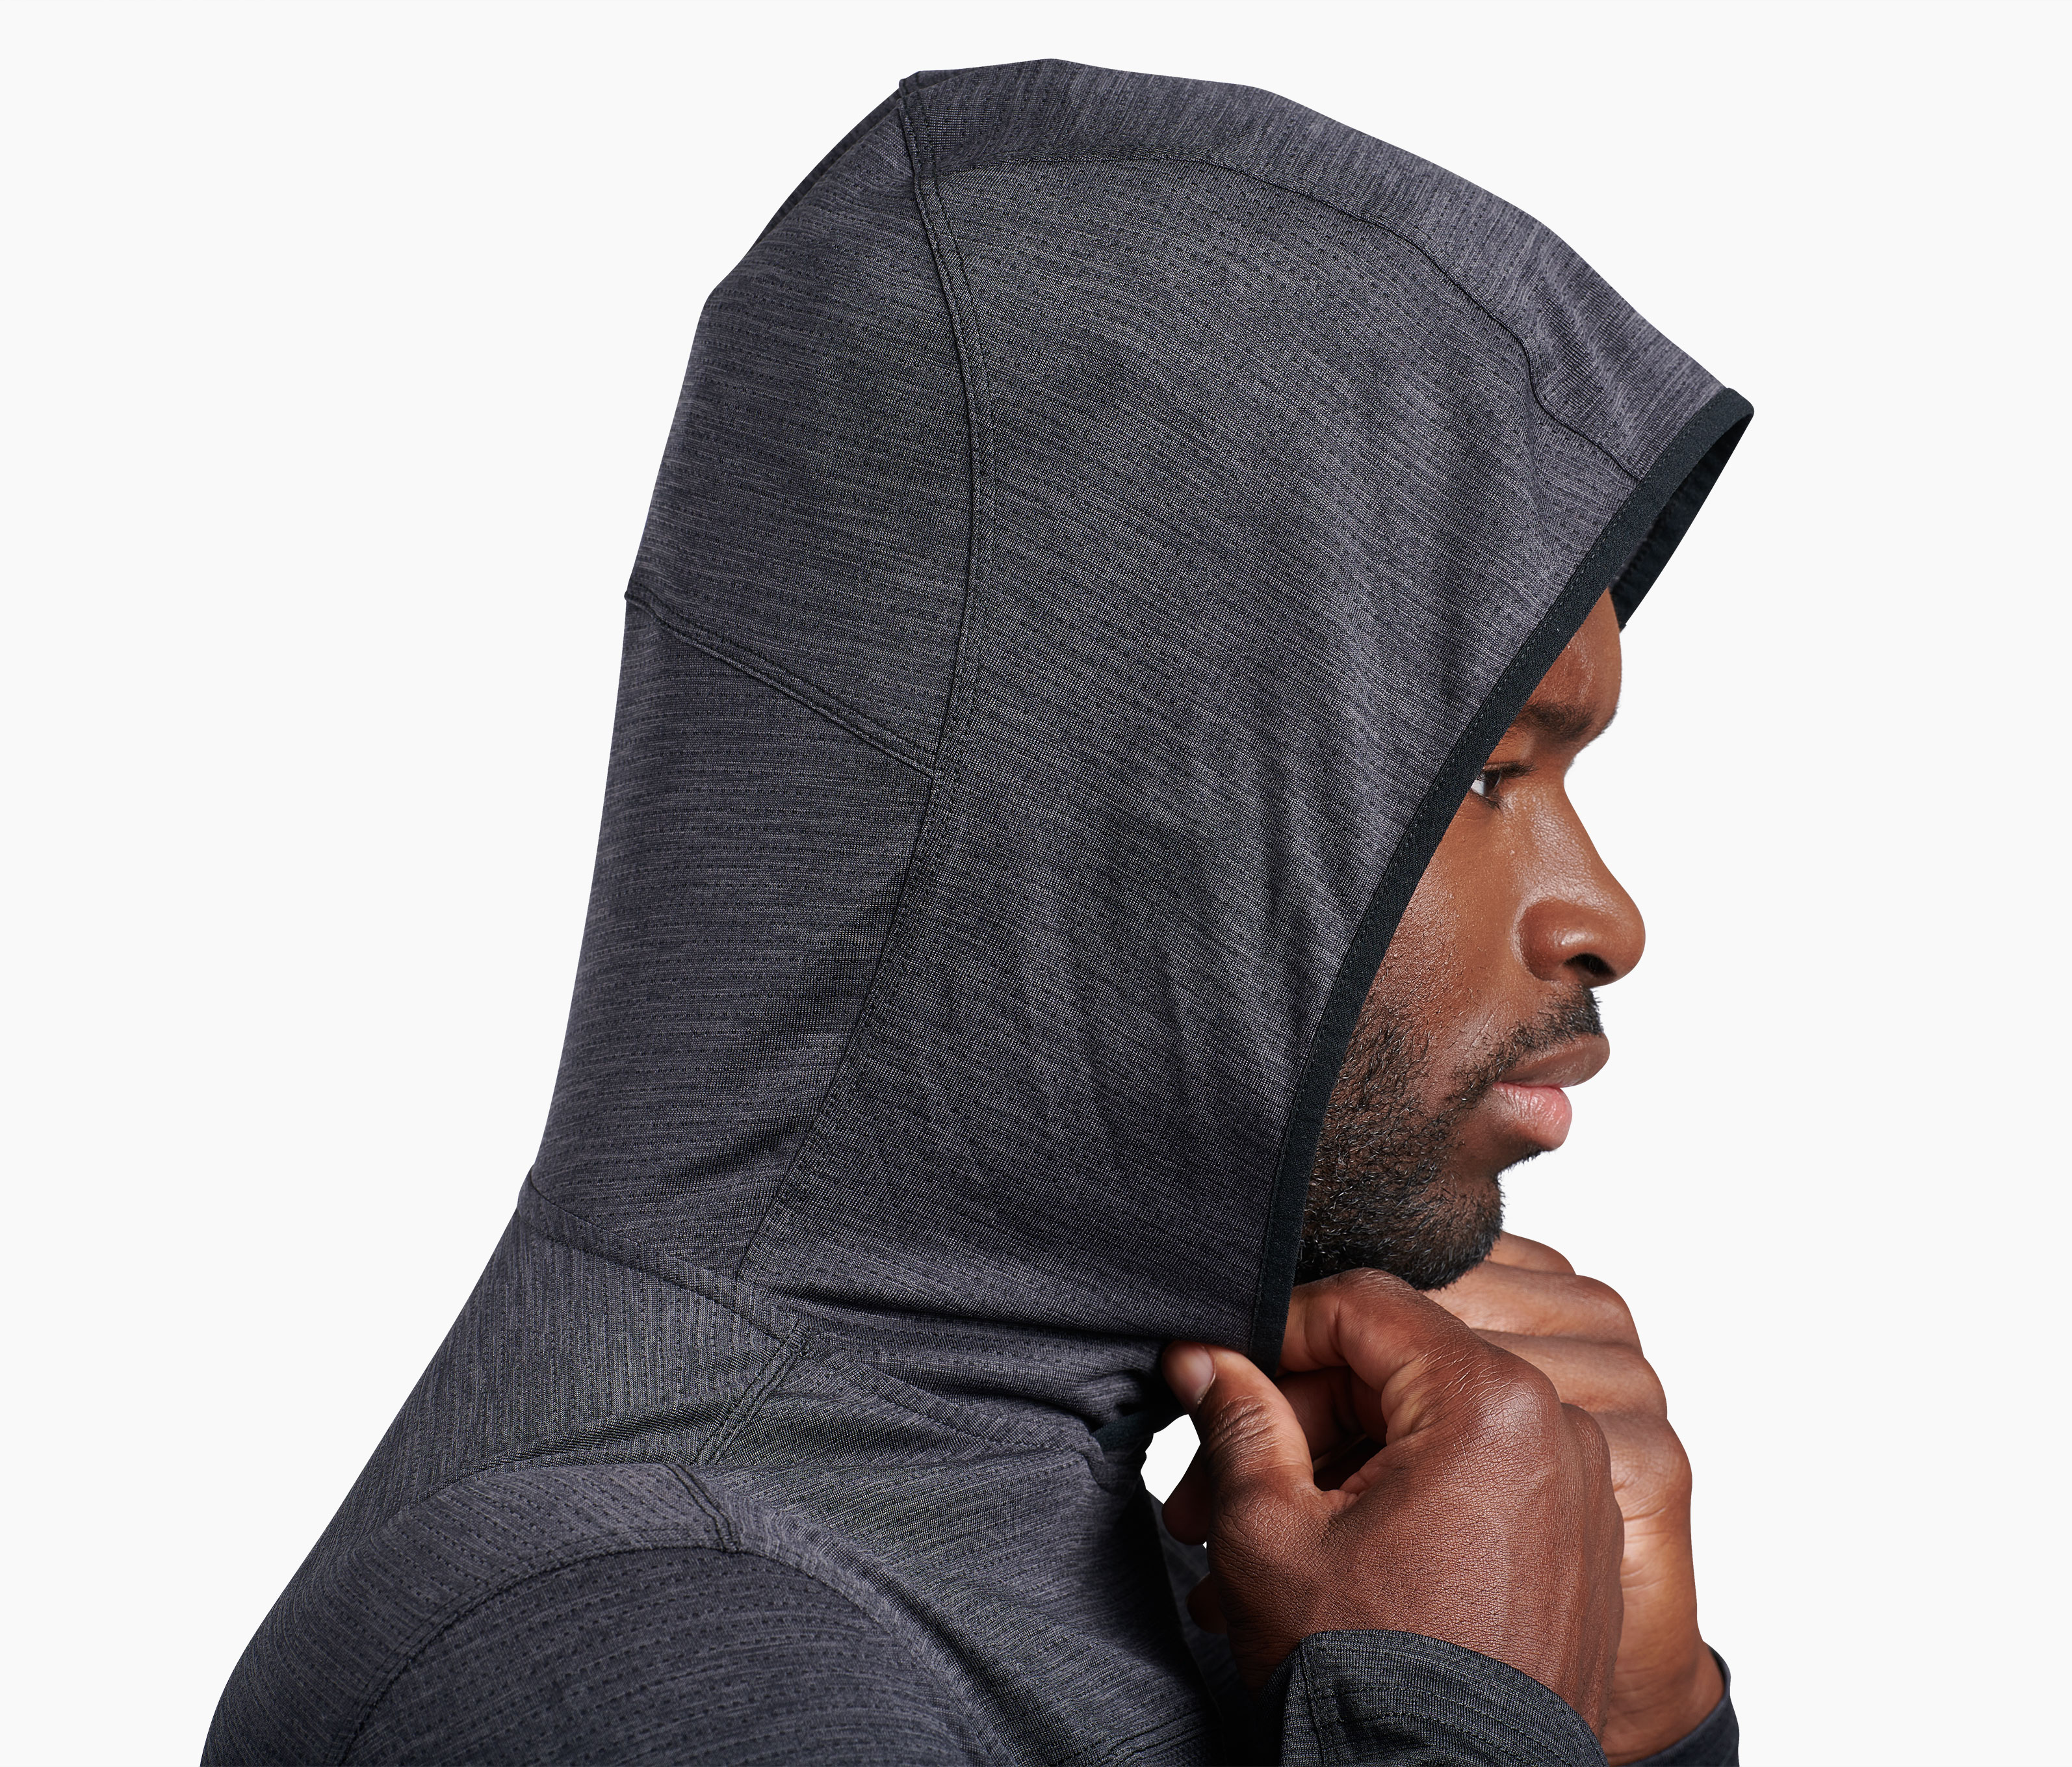 KÜHL Engineered™ Hoody in Men's Long Sleeve